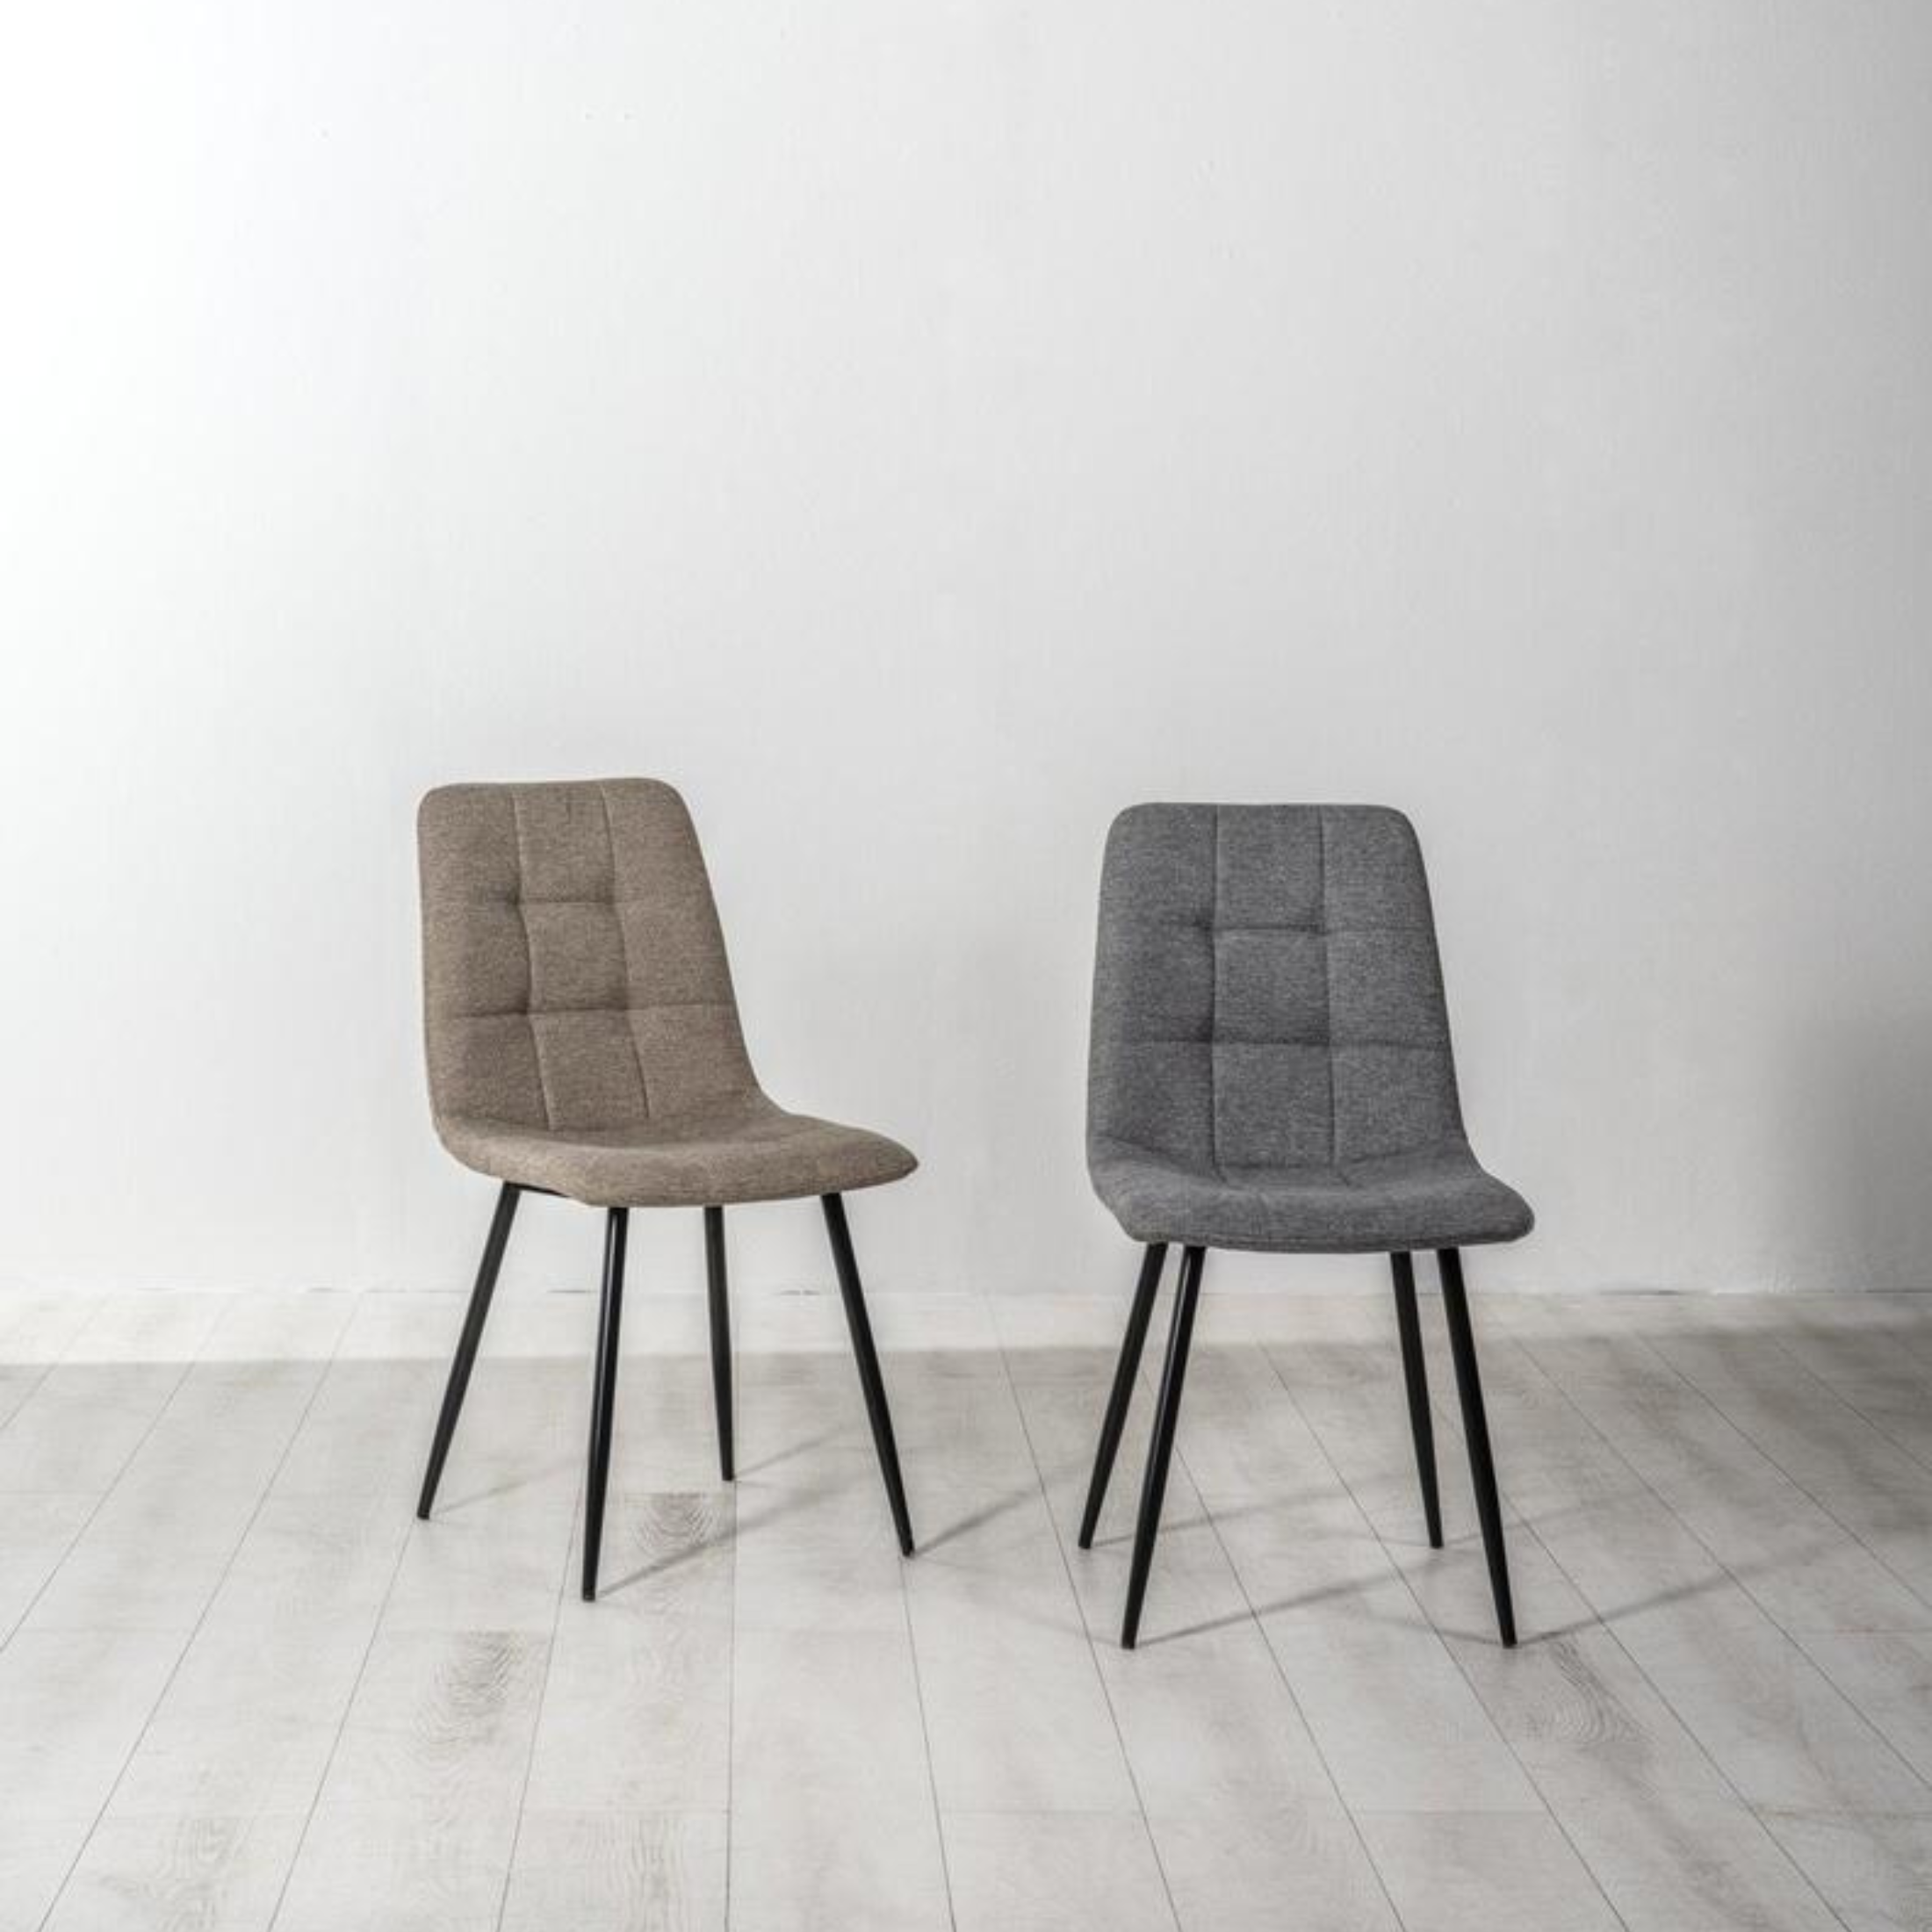 Silla tapizada de tela "Alma" sillón comedor moderno 44x55 cm 81h